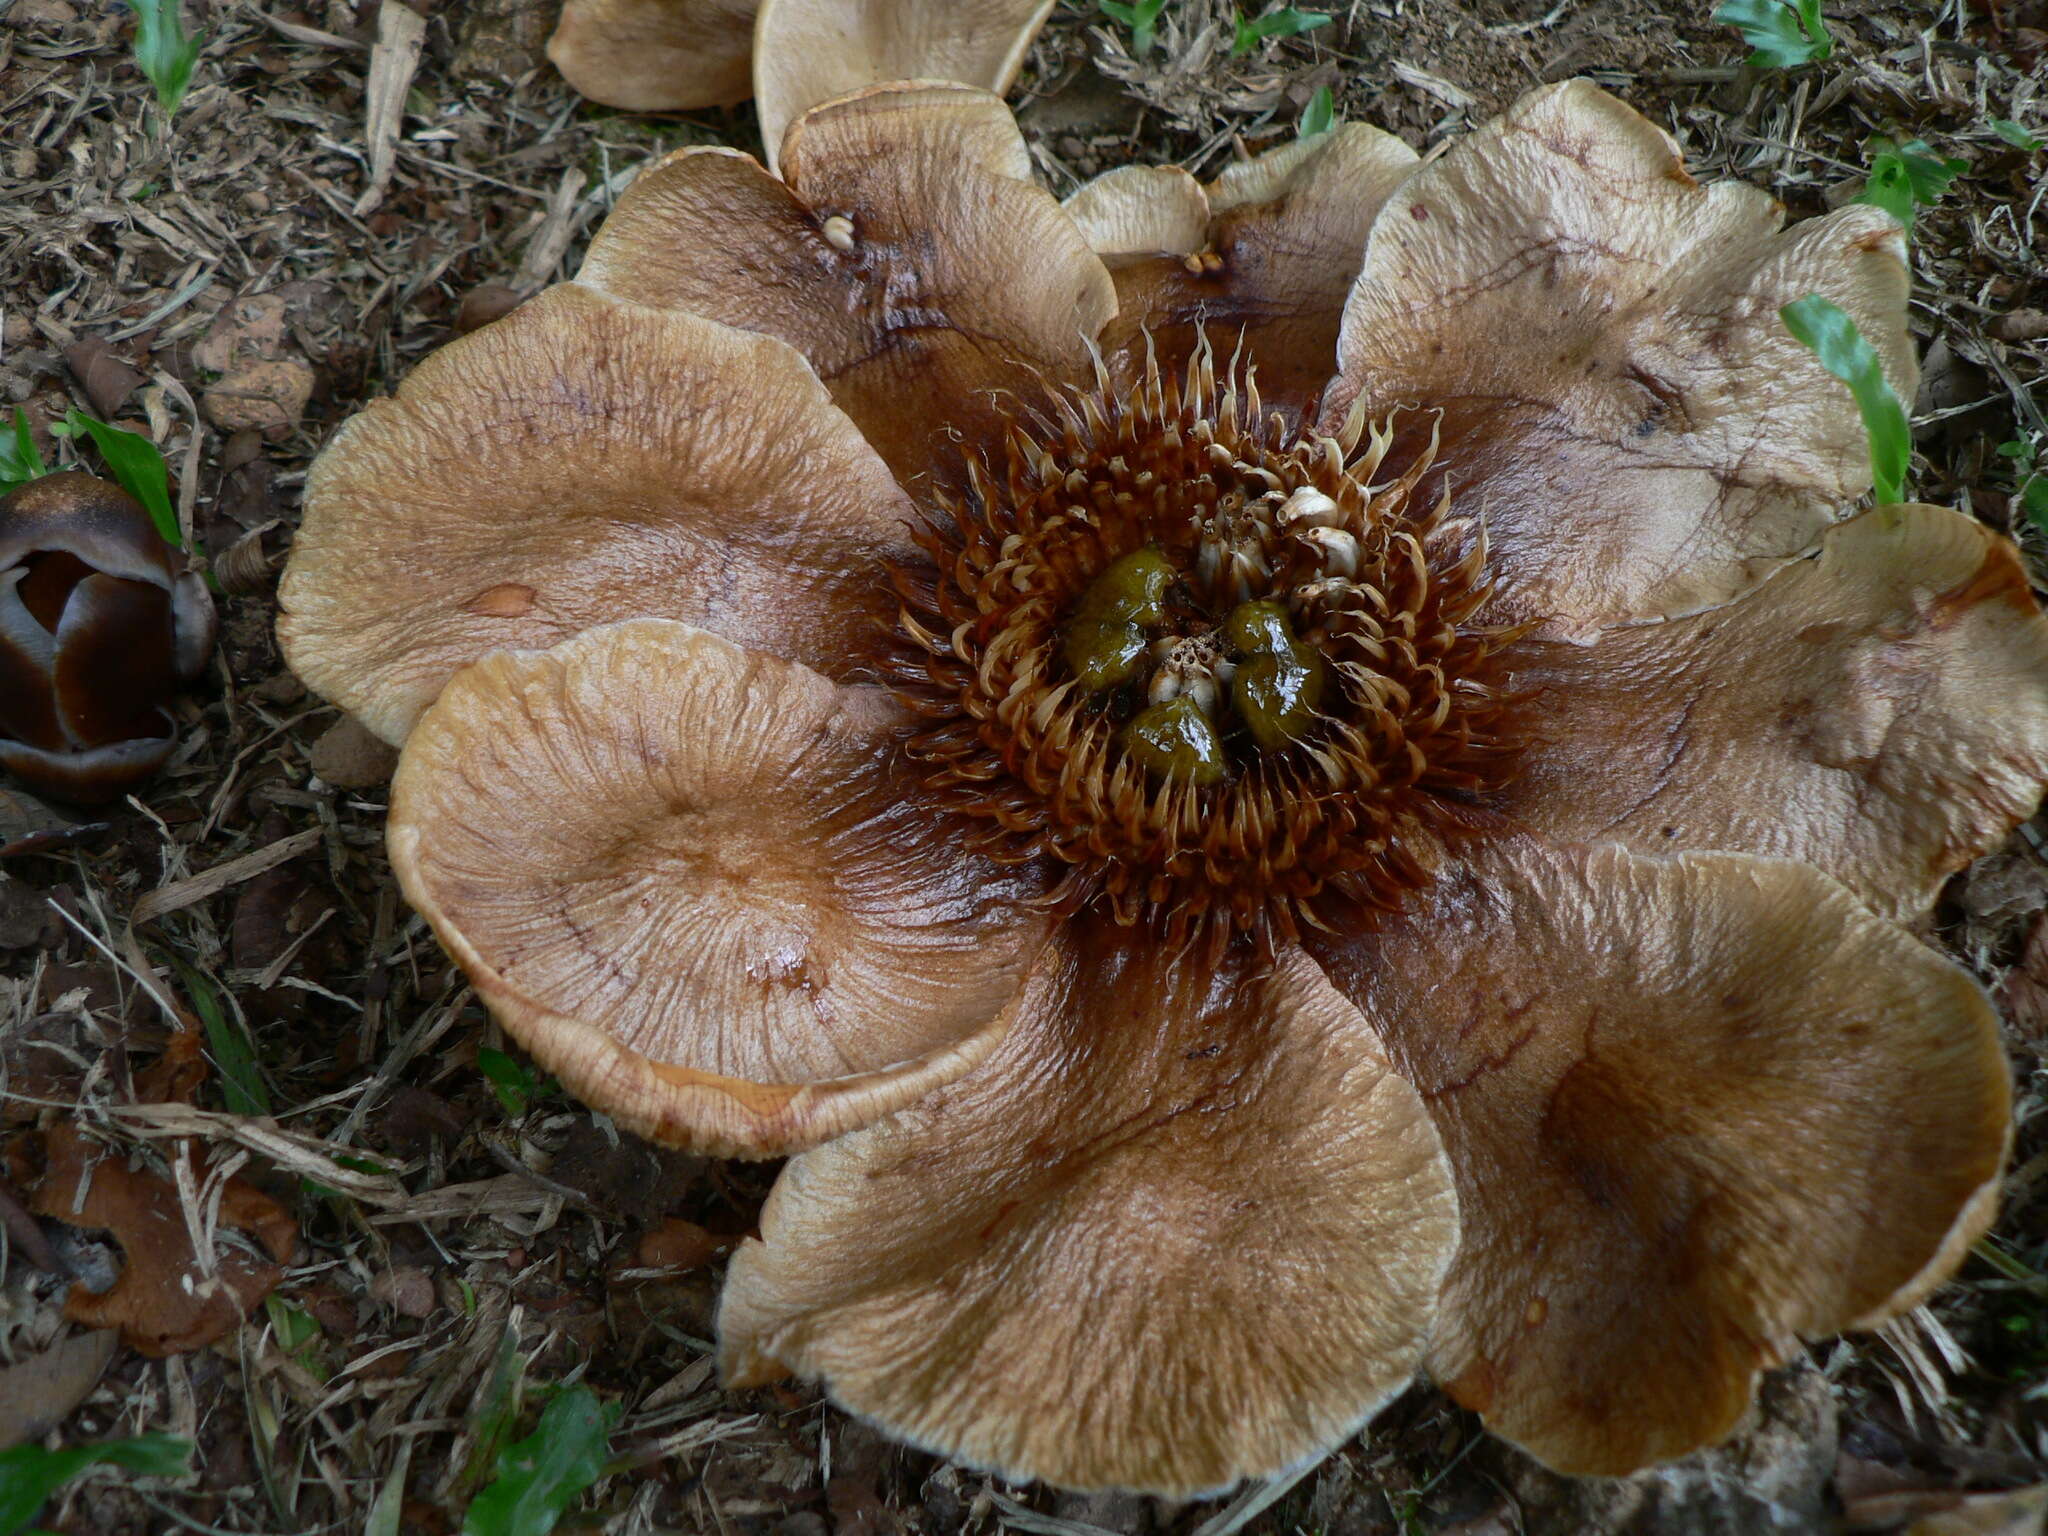 Image of Clusia grandiflora Splitg.